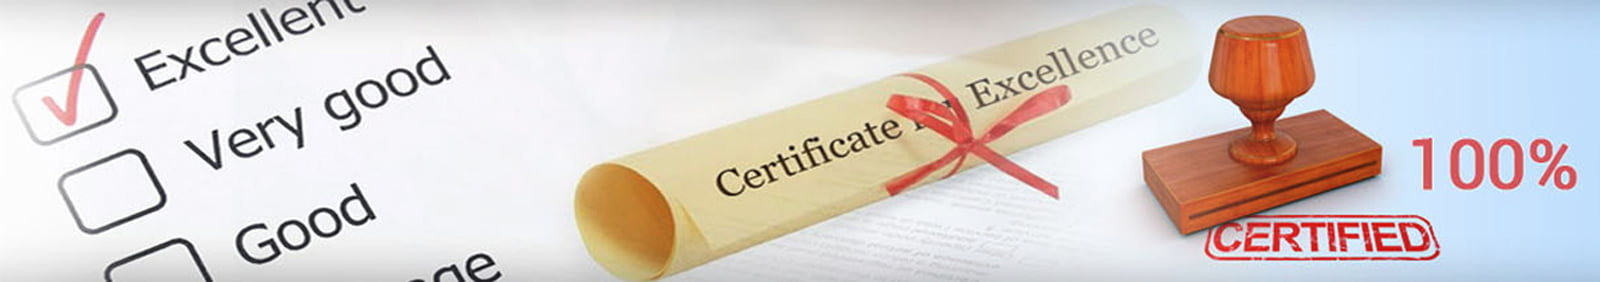 certifications_bannerlargeimage